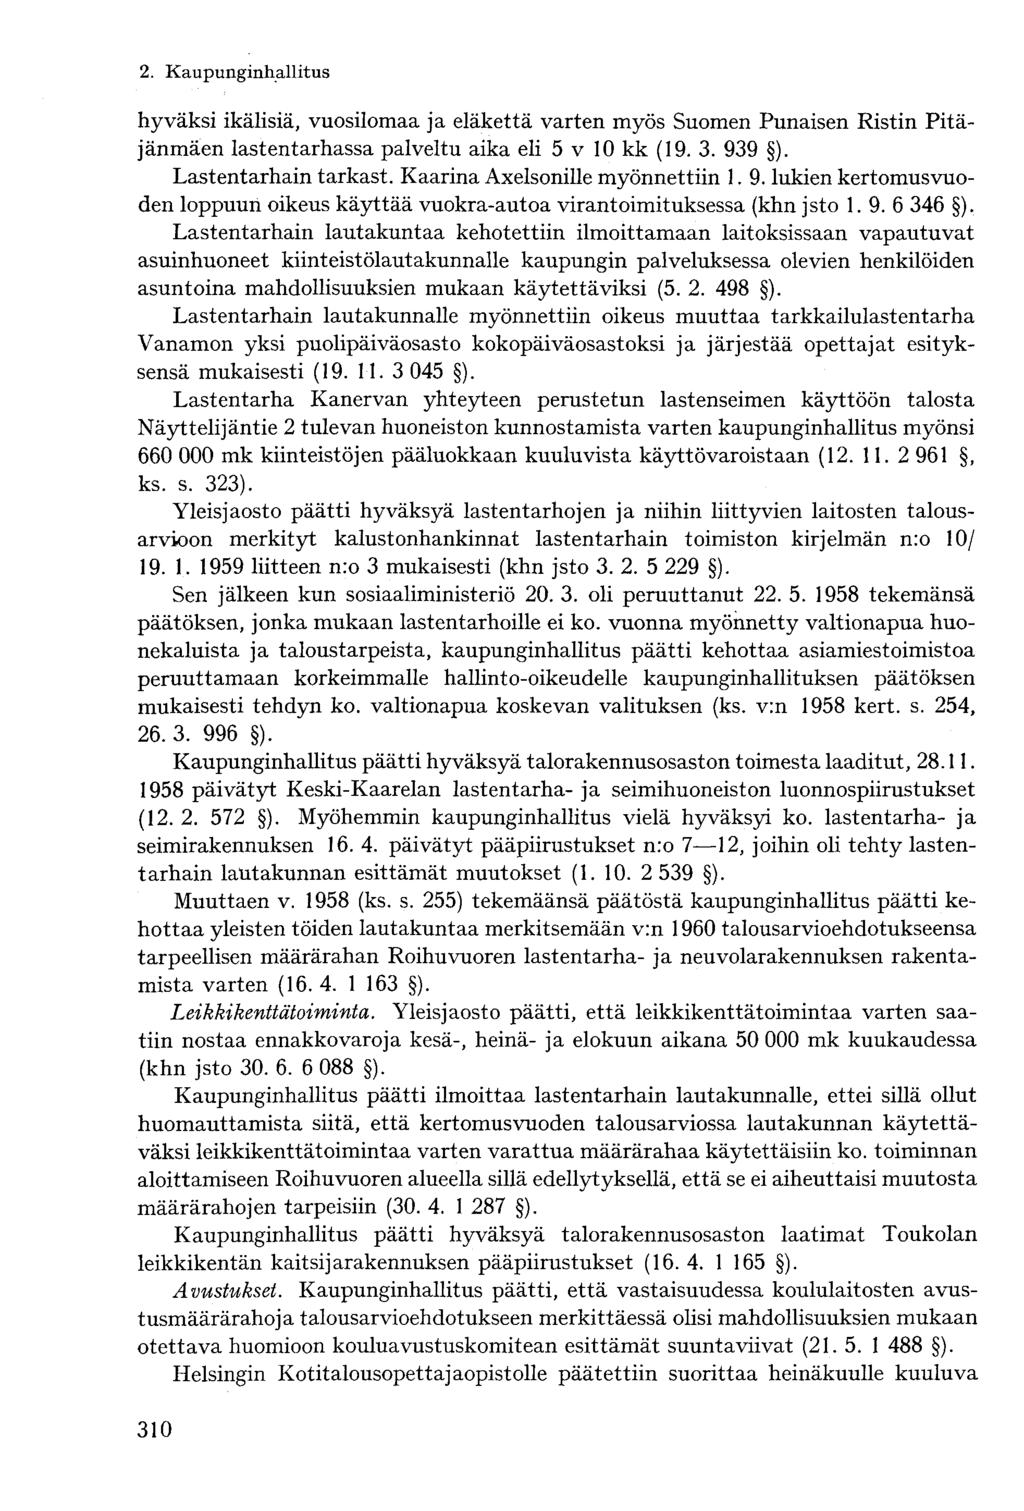 hyväksi ikälisiä, vuosilomaa ja eläkettä varten myös Suomen Punaisen Ristin Pitäjänmäen lastentarhassa palveltu aika eli 5 v 10 kk (19. 3. 939 ). Lastentarhain tarkast.